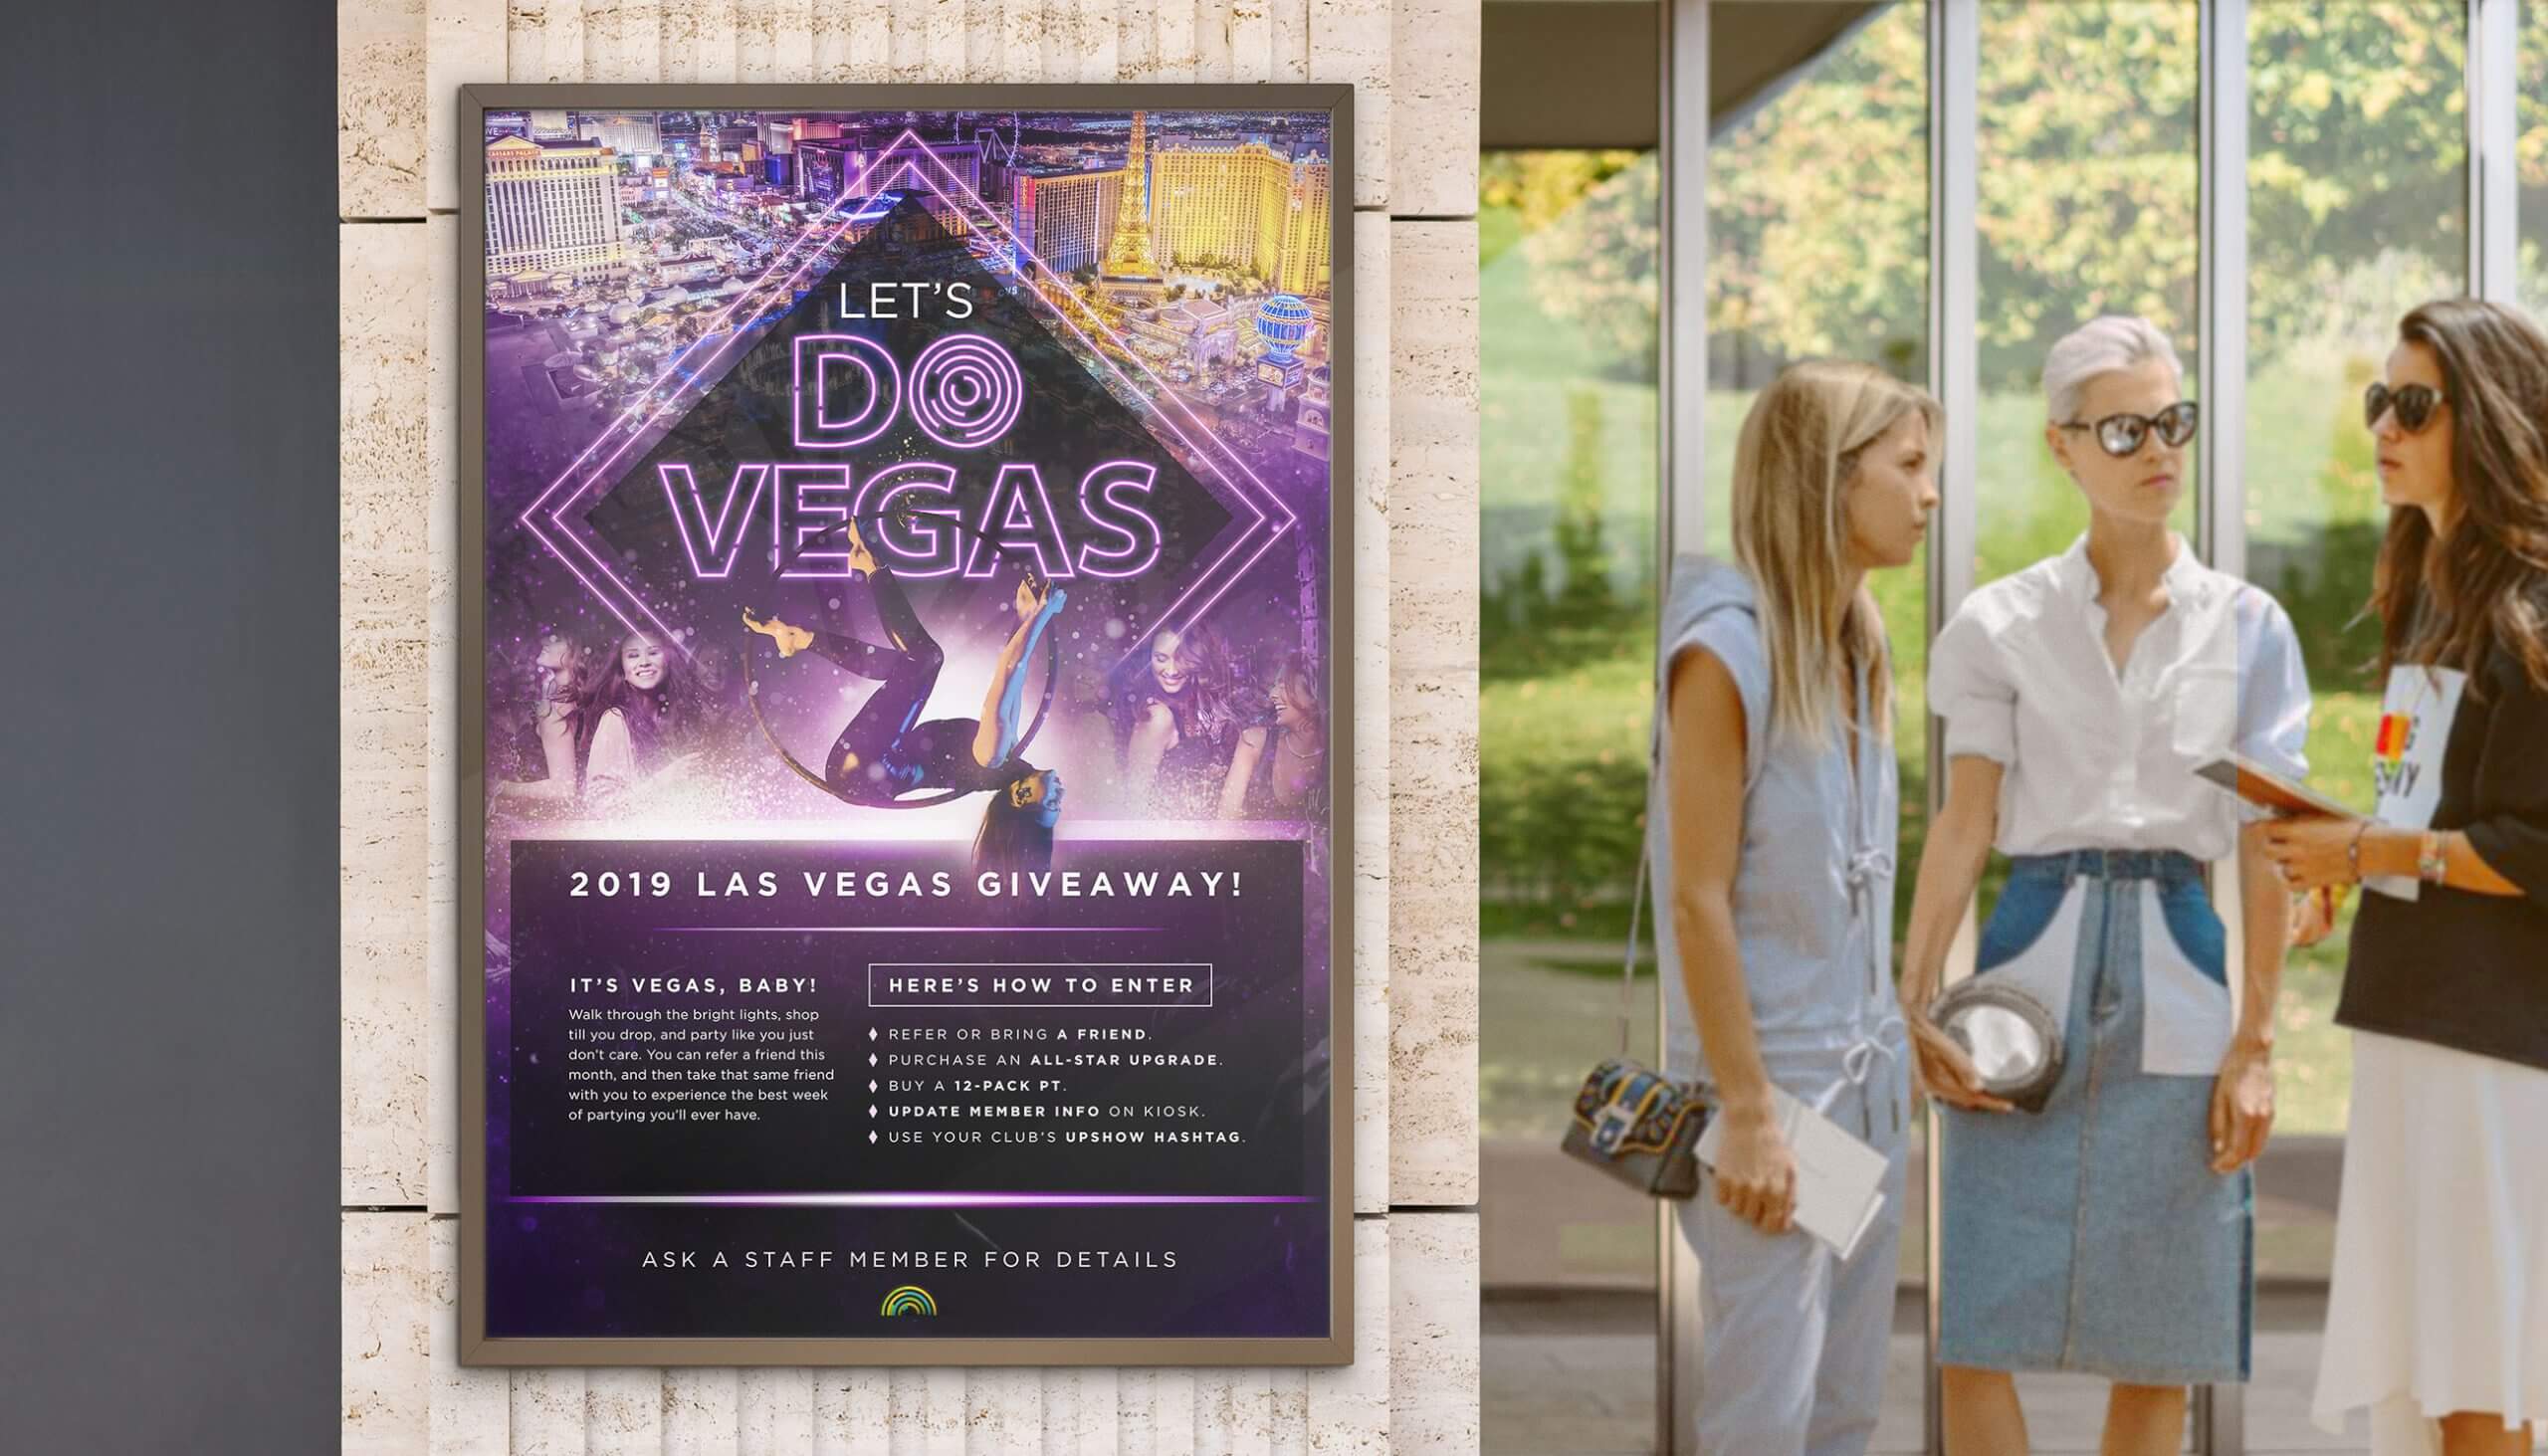 Steve Nash Fitness World "Let's Do Vegas" Promo